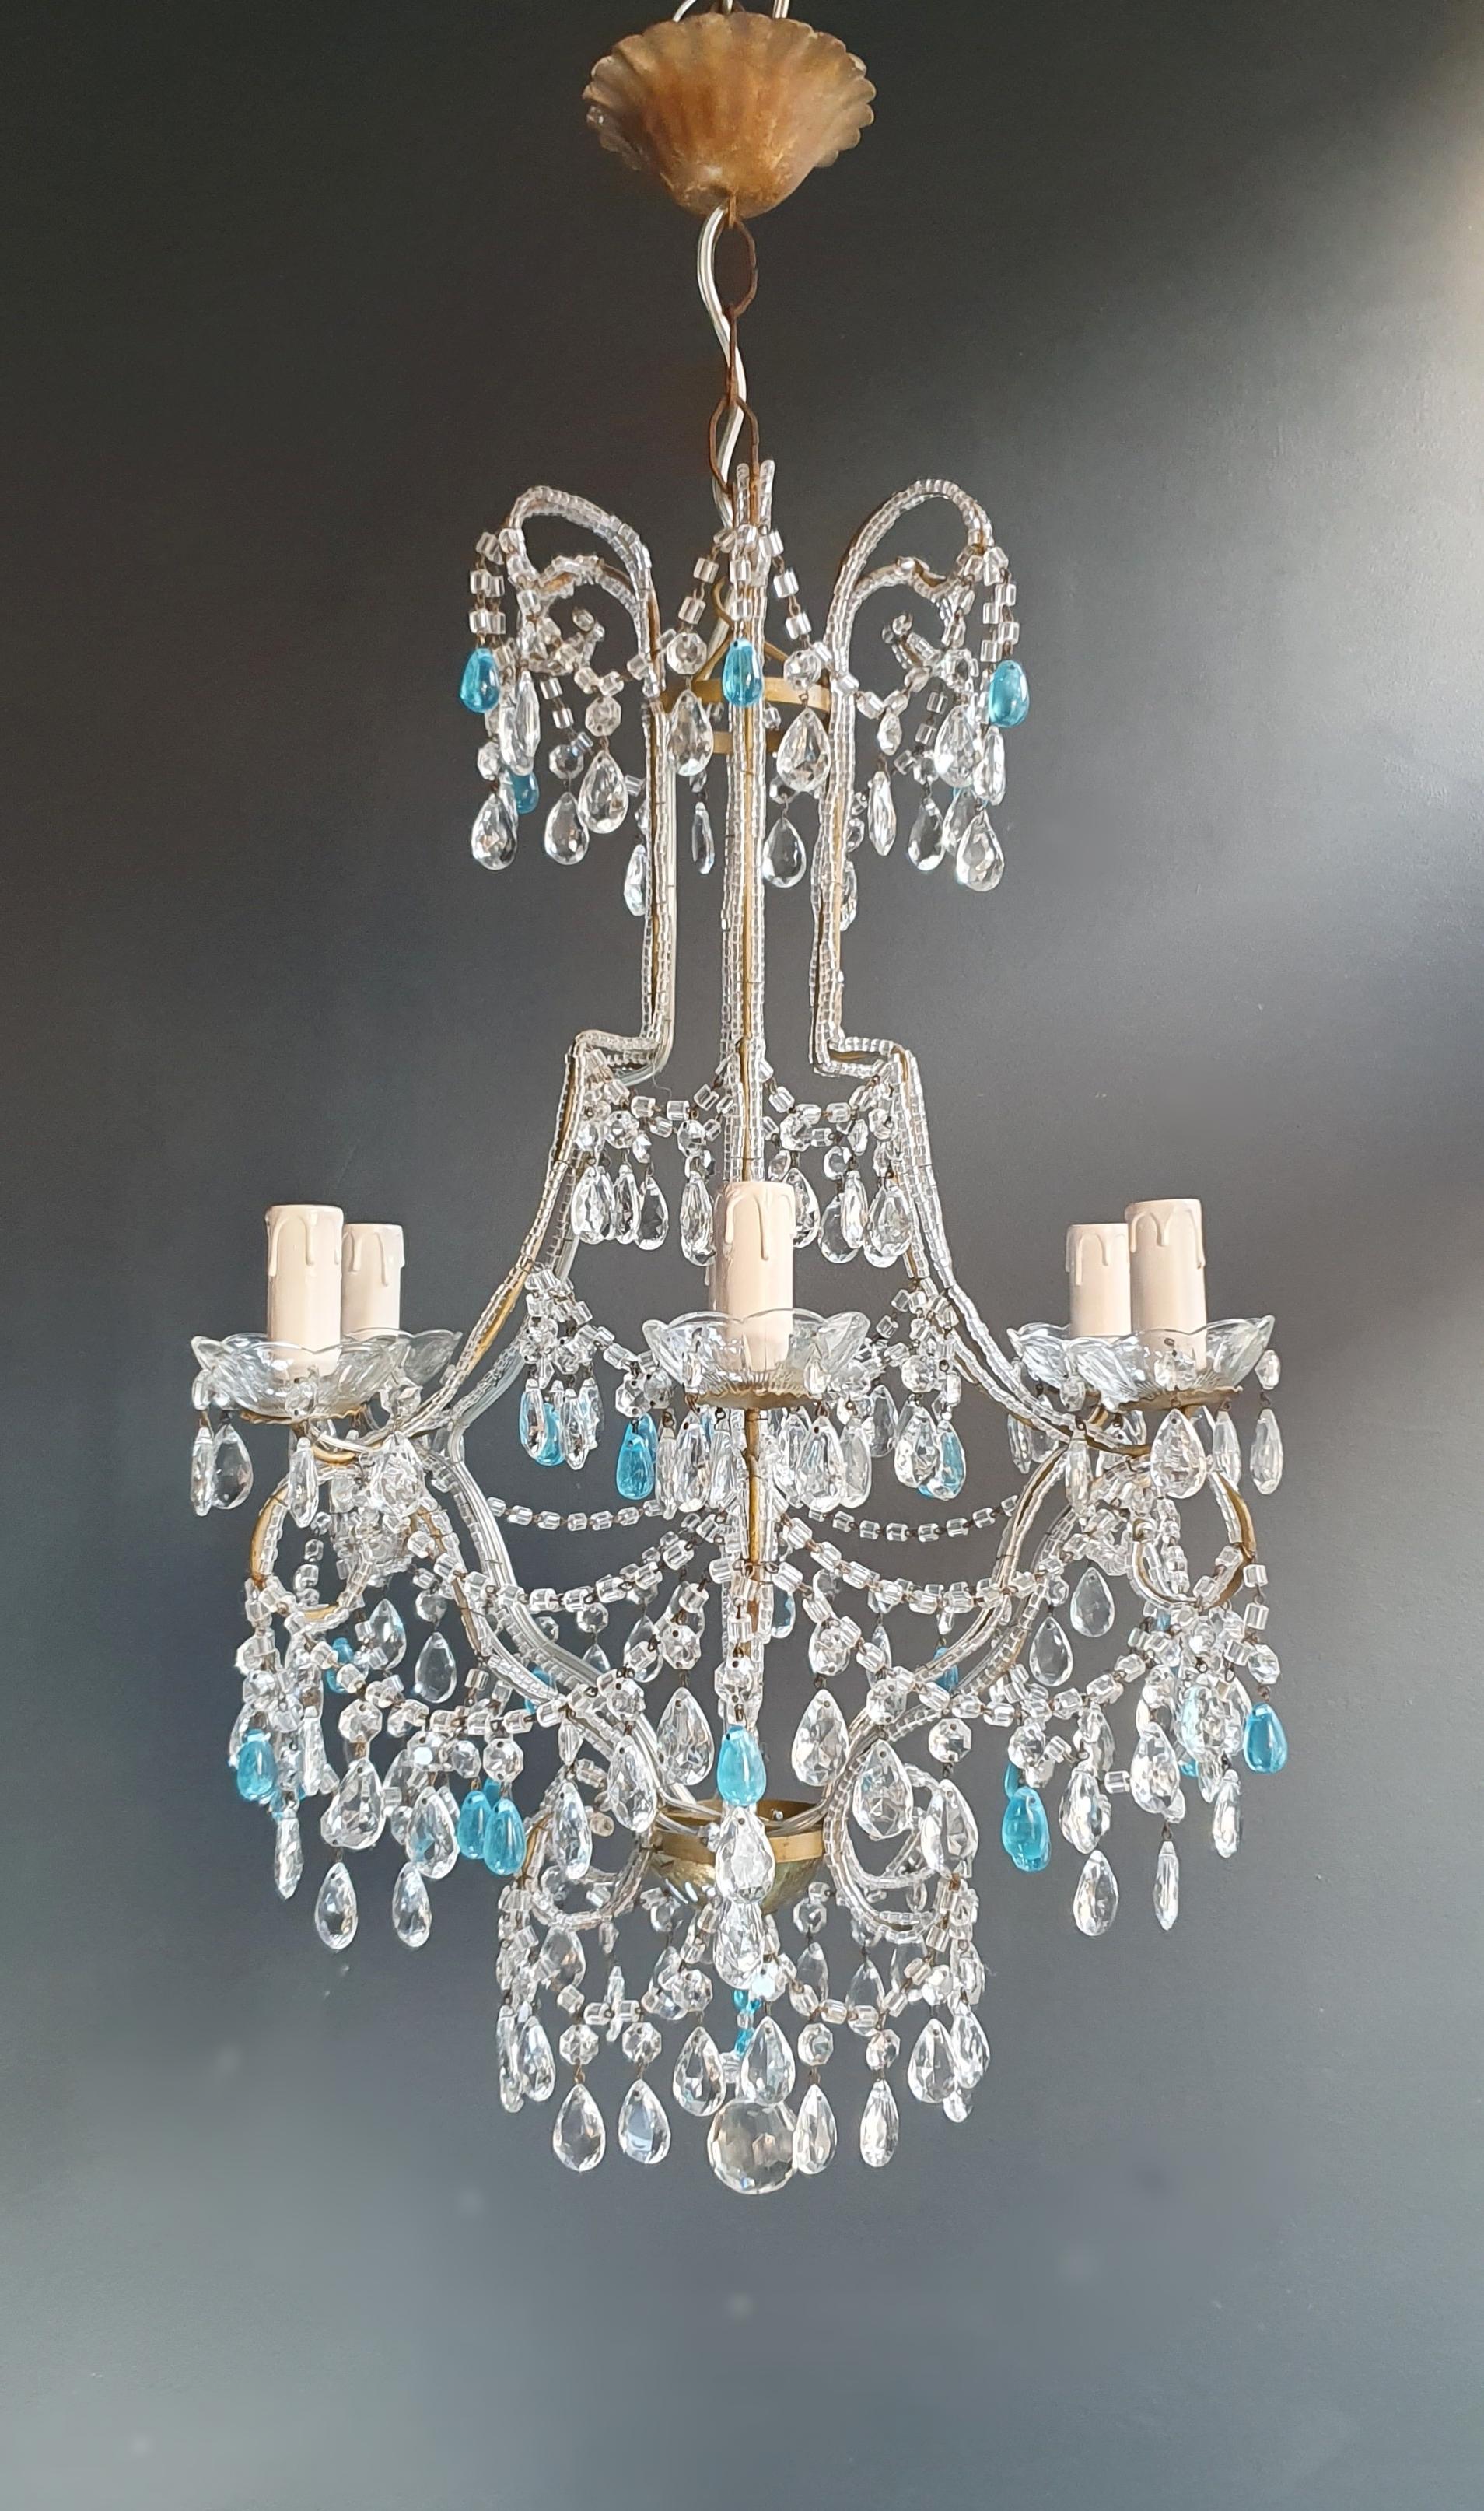 Italian Blue Crystal Chandelier Antique Ceiling Murano Florentiner Lustre Art Nouveau